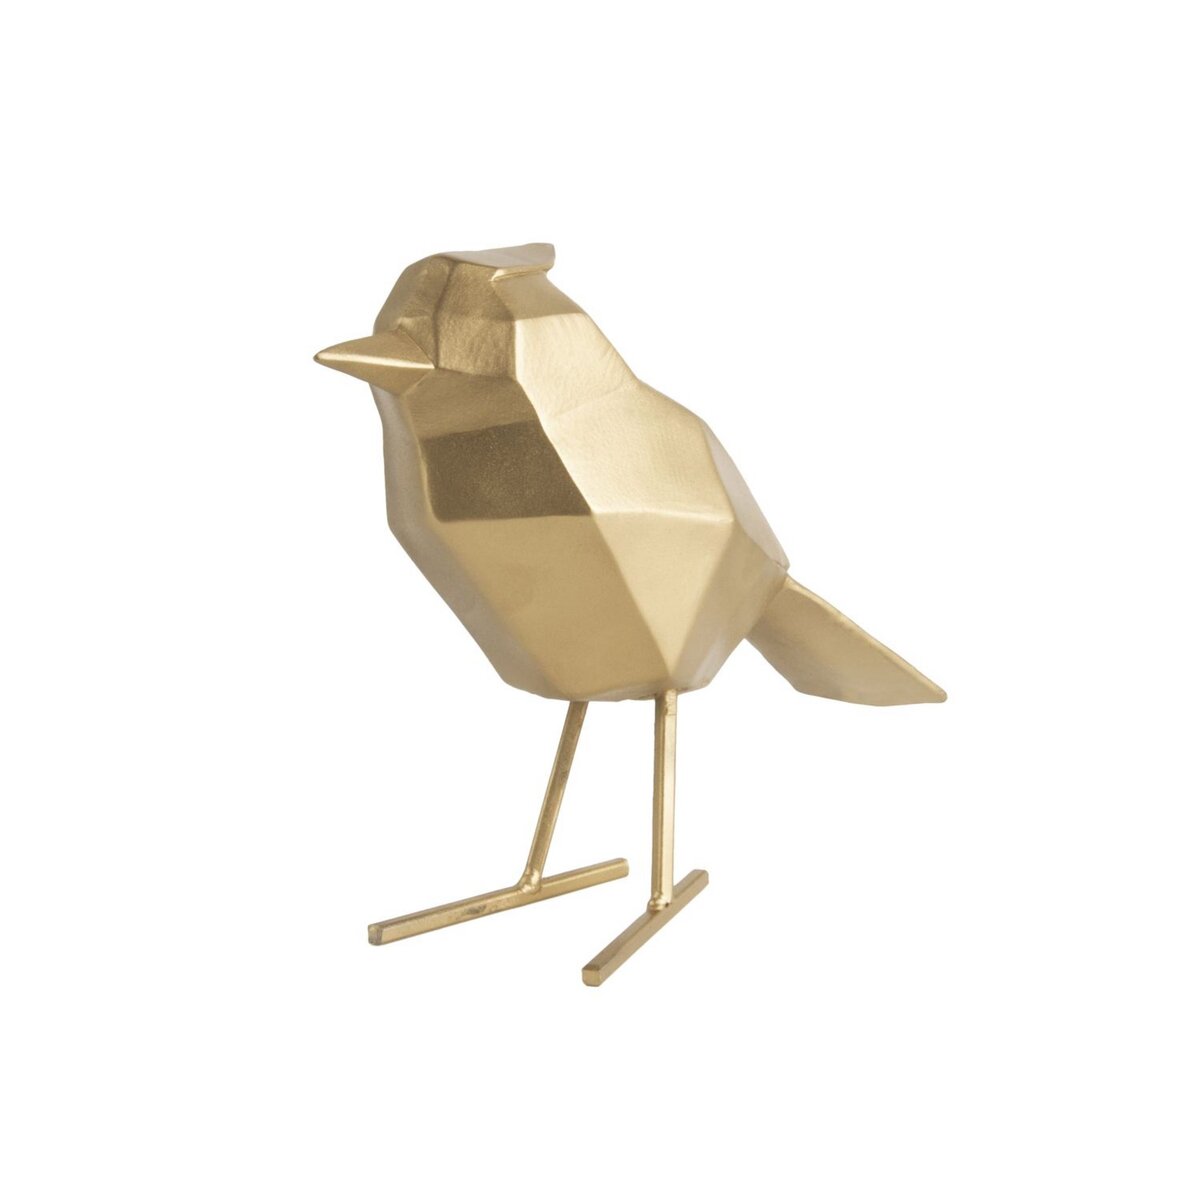 PRESENT TIME Statuette de décoration oiseau en Polyrésine - Doré